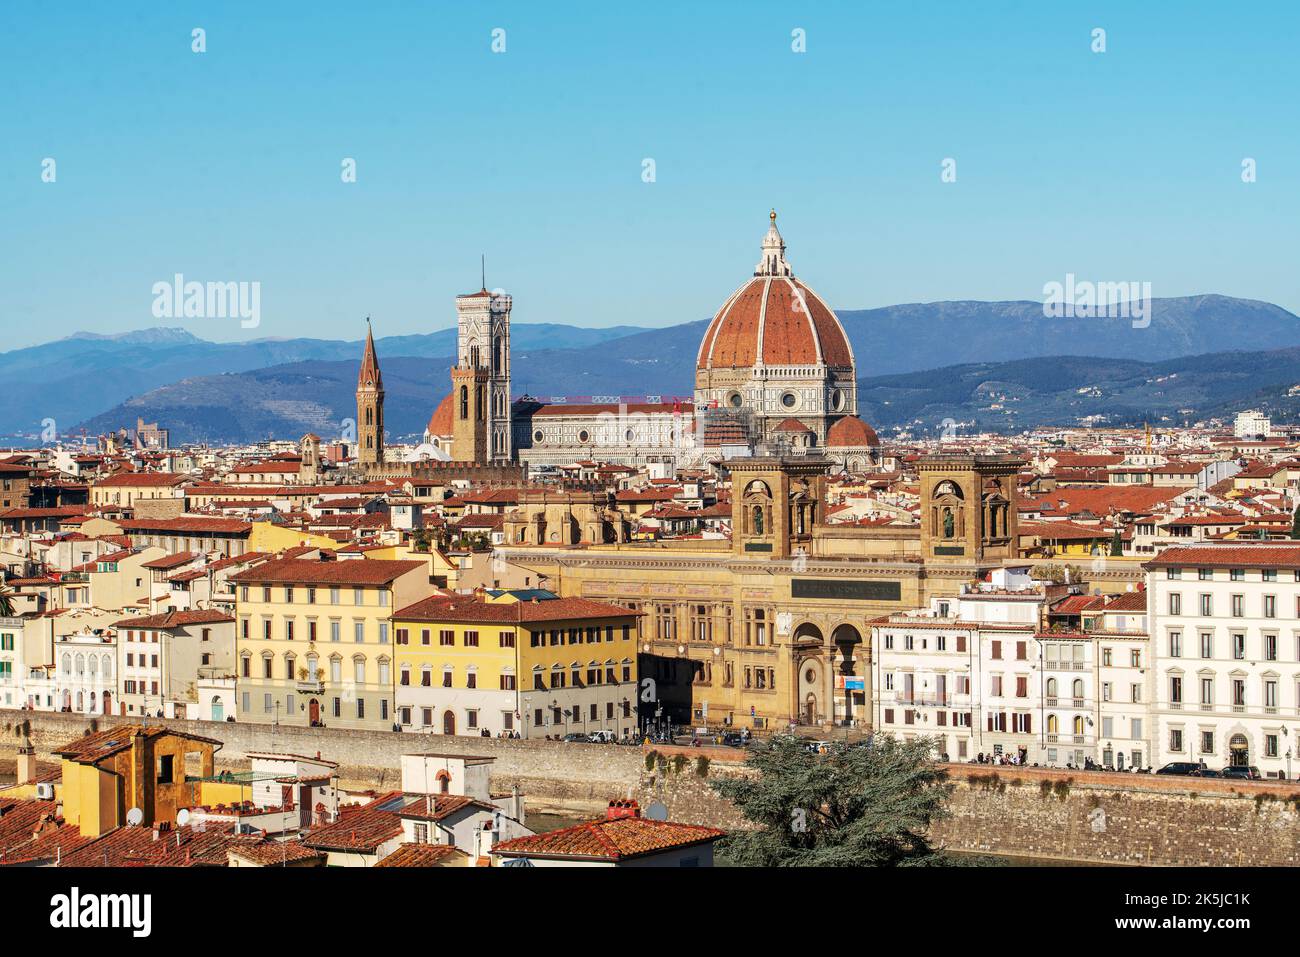 Le dôme rouge de la cathédrale était alors le plus grand du monde, 45 mètres de diamètre et 100 mètres de haut, et devint bientôt le symbole de Florence - Banque D'Images